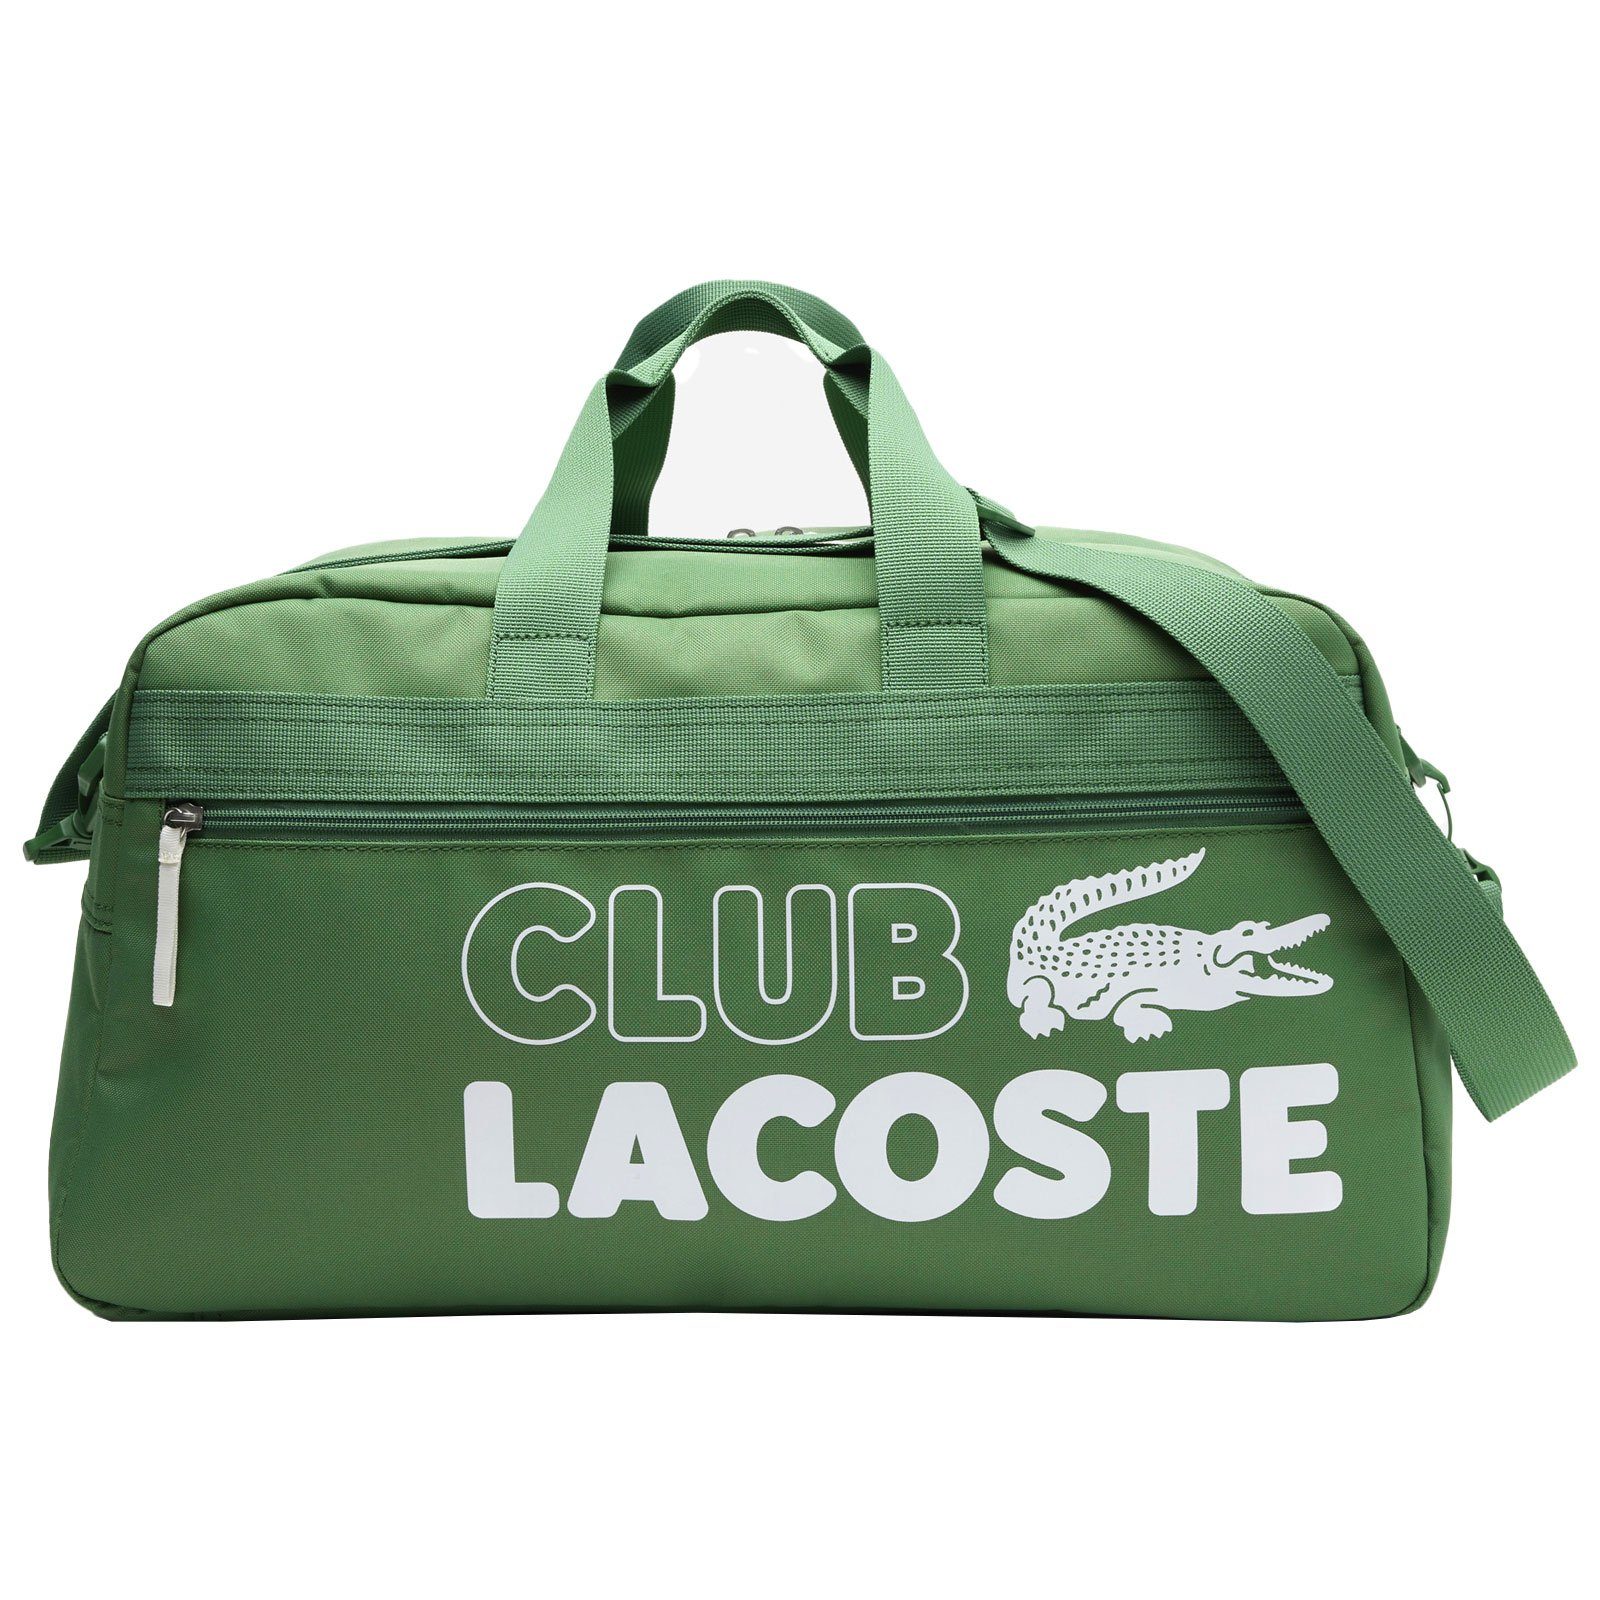 Lacoste Sporttasche Gym Bag, mit auffälligem Logo und Schriftzug